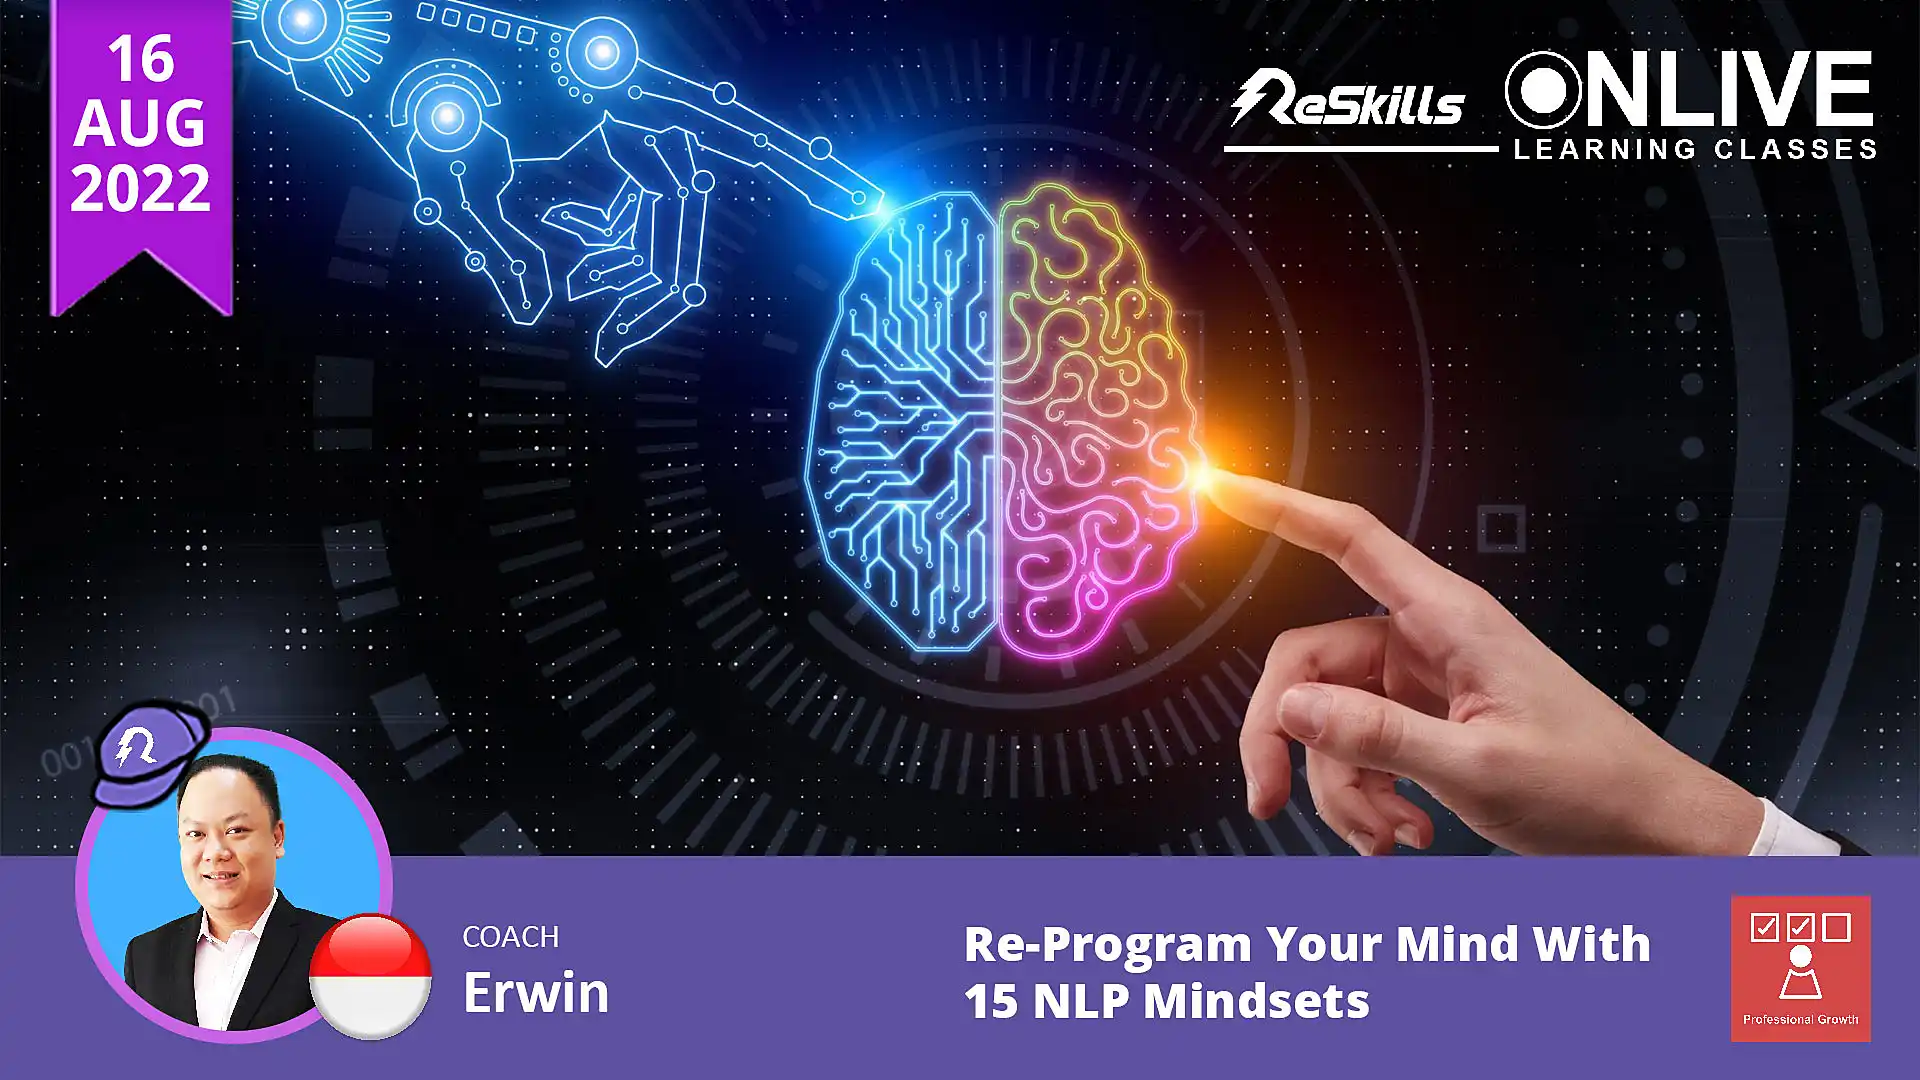 Re-Program Your Mind With 15 NLP Mindsets - ReSkills